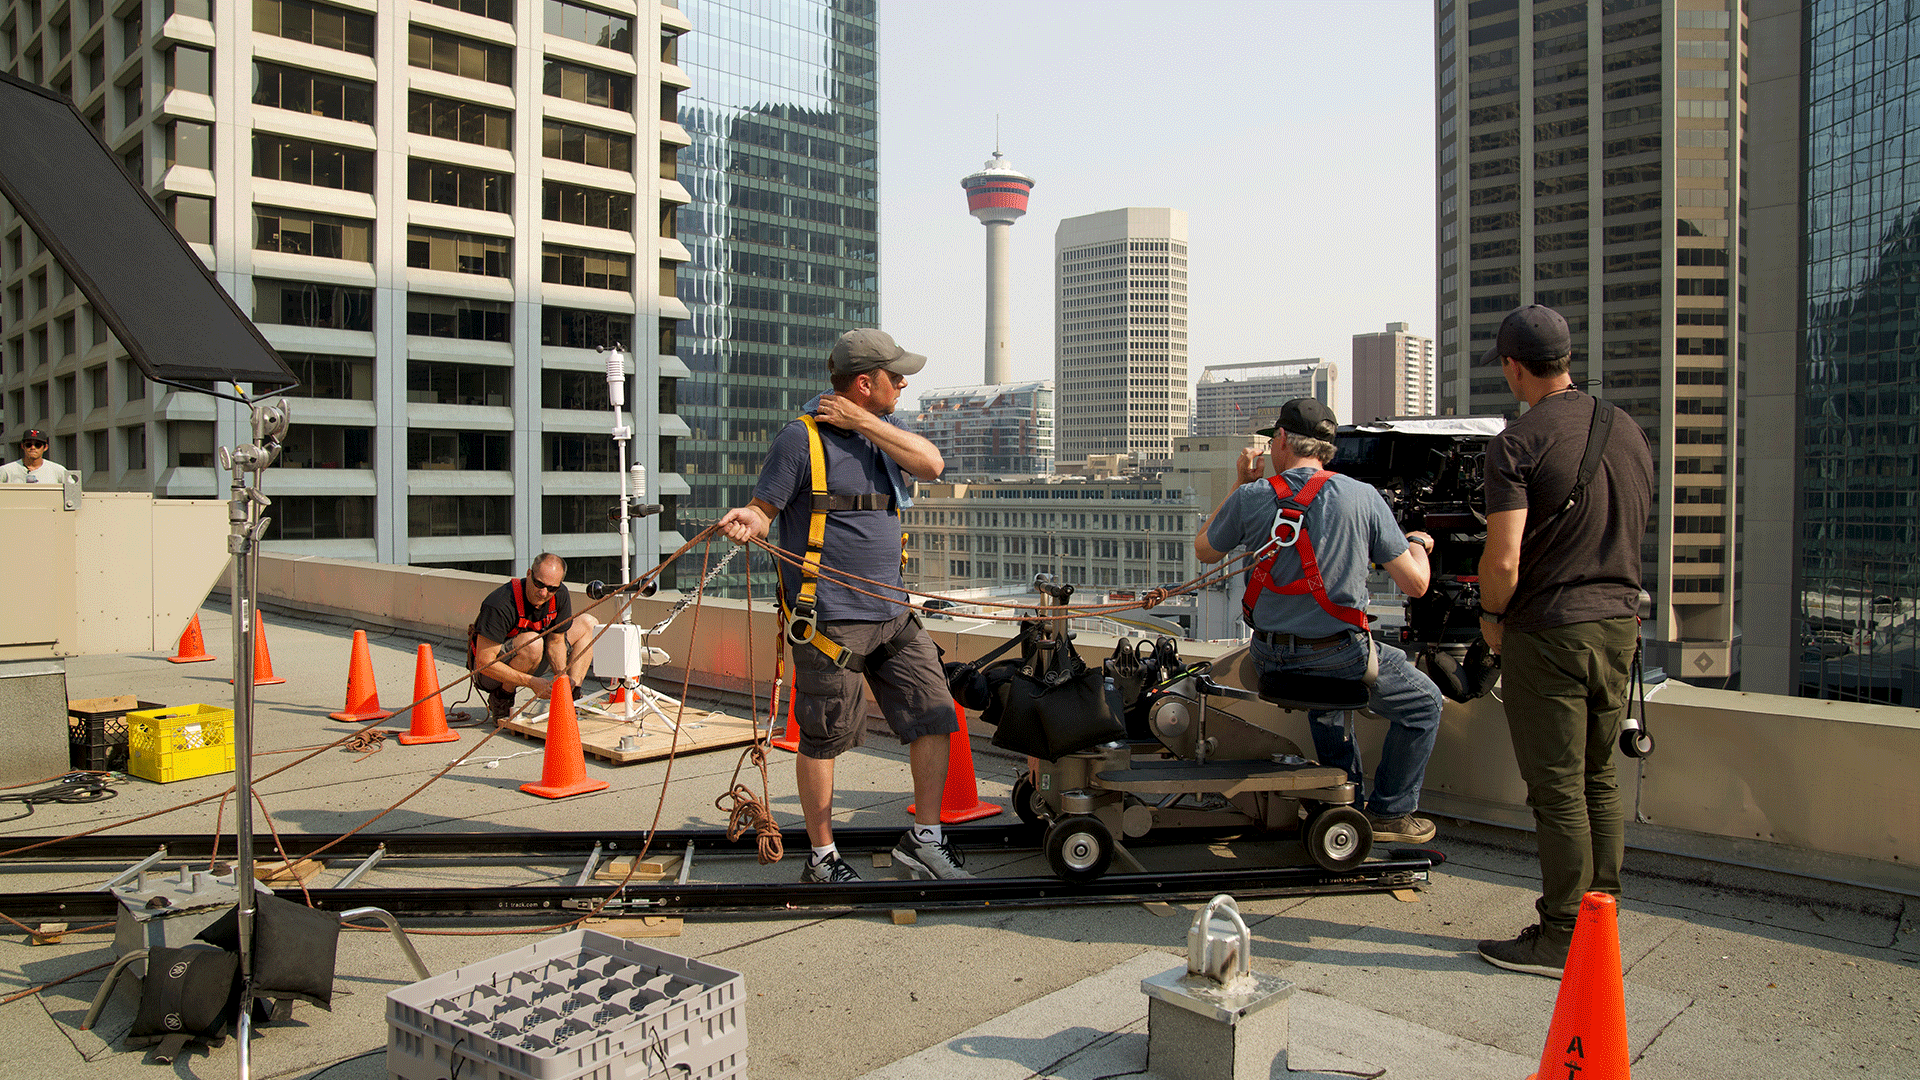 Calgary tower movie crew